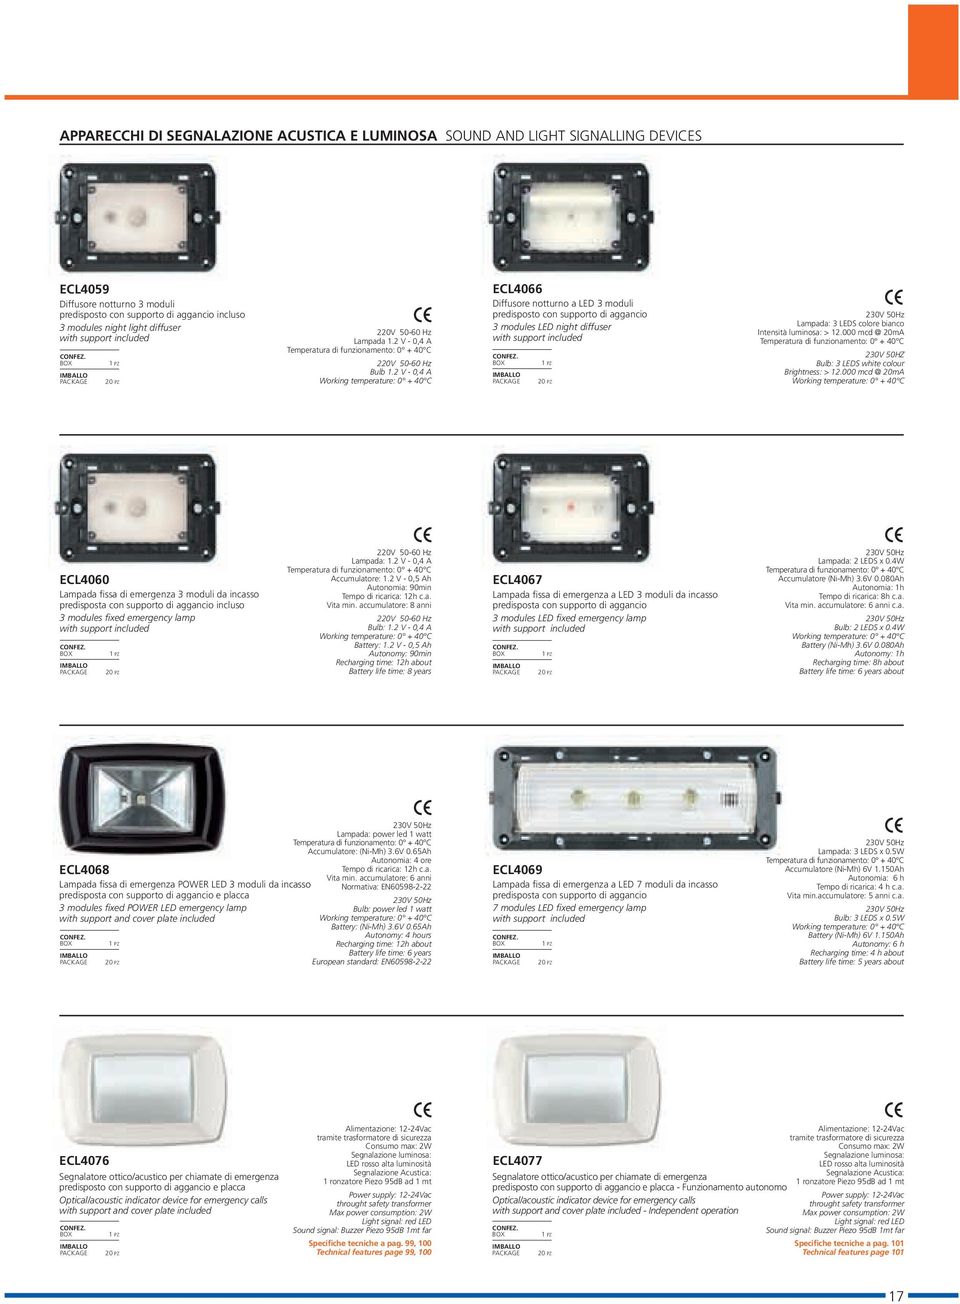 2 V - 0,4 A Working temperature: 0 + 40 C ECL4066 Diffusore notturno a LED 3 moduli predisposto con supporto di aggancio 3 modules LED night diffuser with support included 230V 50Hz Lampada: 3 LEDS